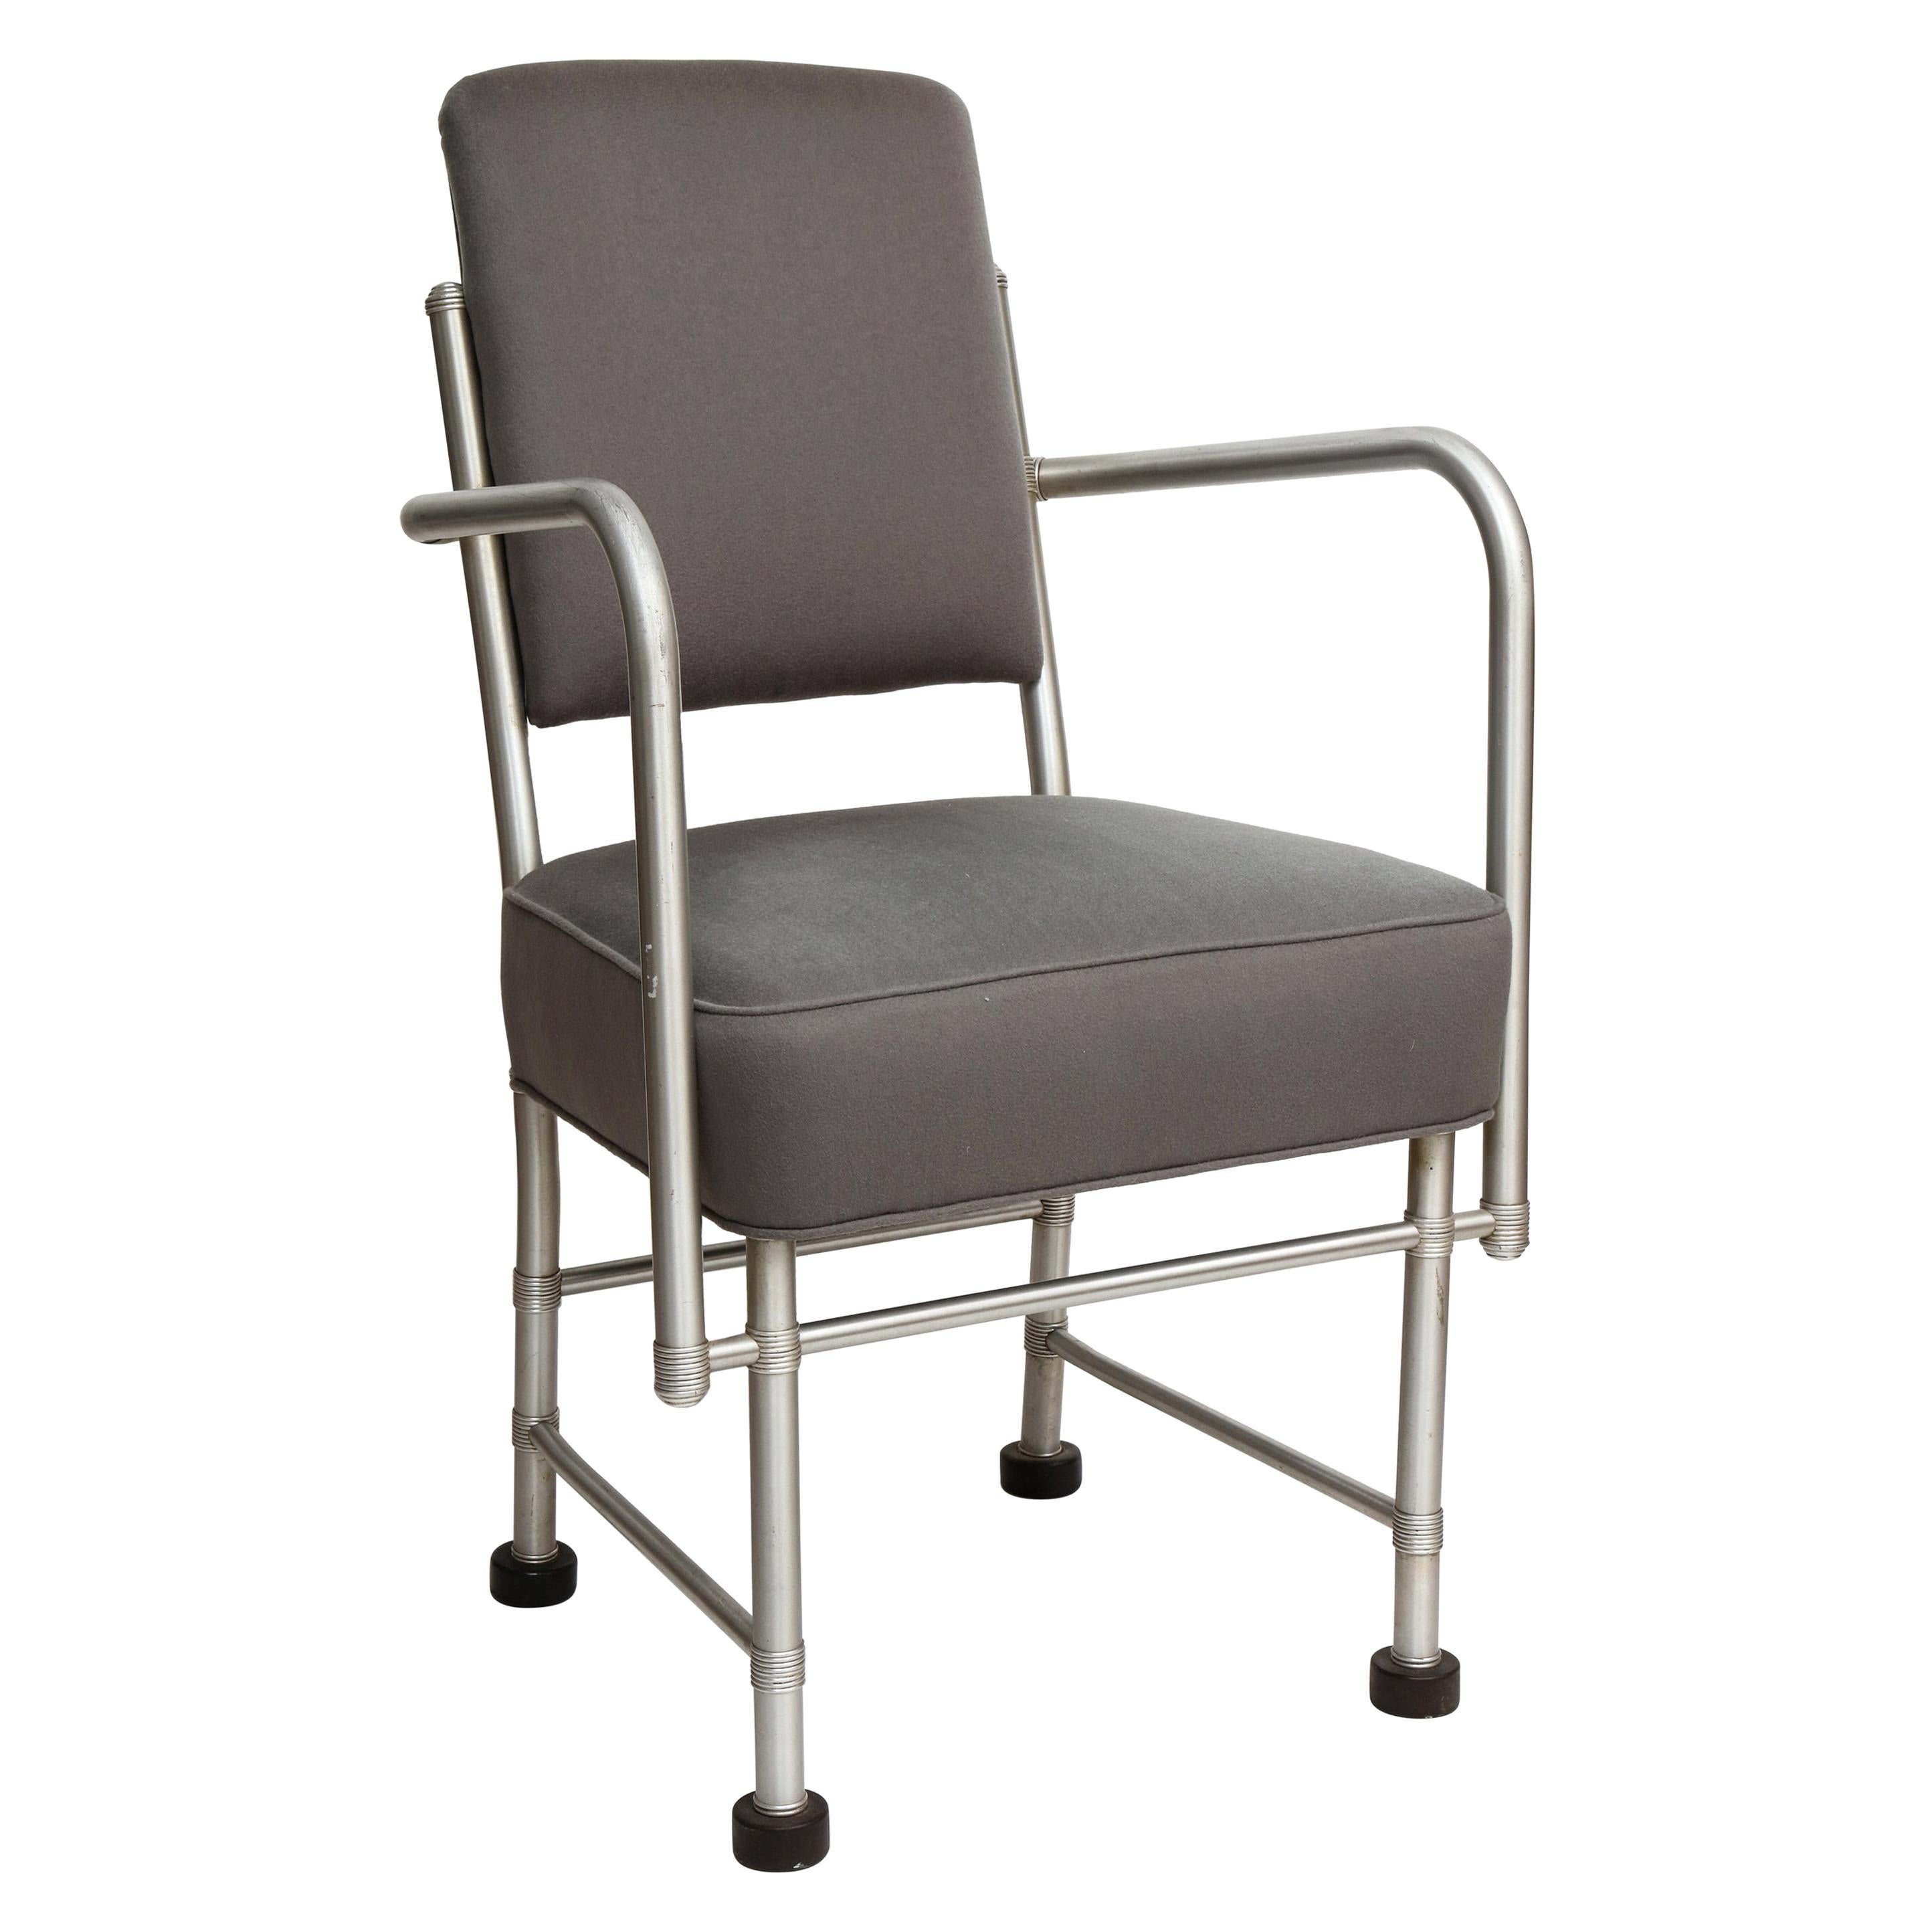 Un rare fauteuil Art déco en aluminium de l'âge des machines par le célèbre designer américain Warren McArthur. Le cadre tubulaire en aluminium anodisé composé de plusieurs pièces et d'un squelette complexe de tiges de support en acier est le signe